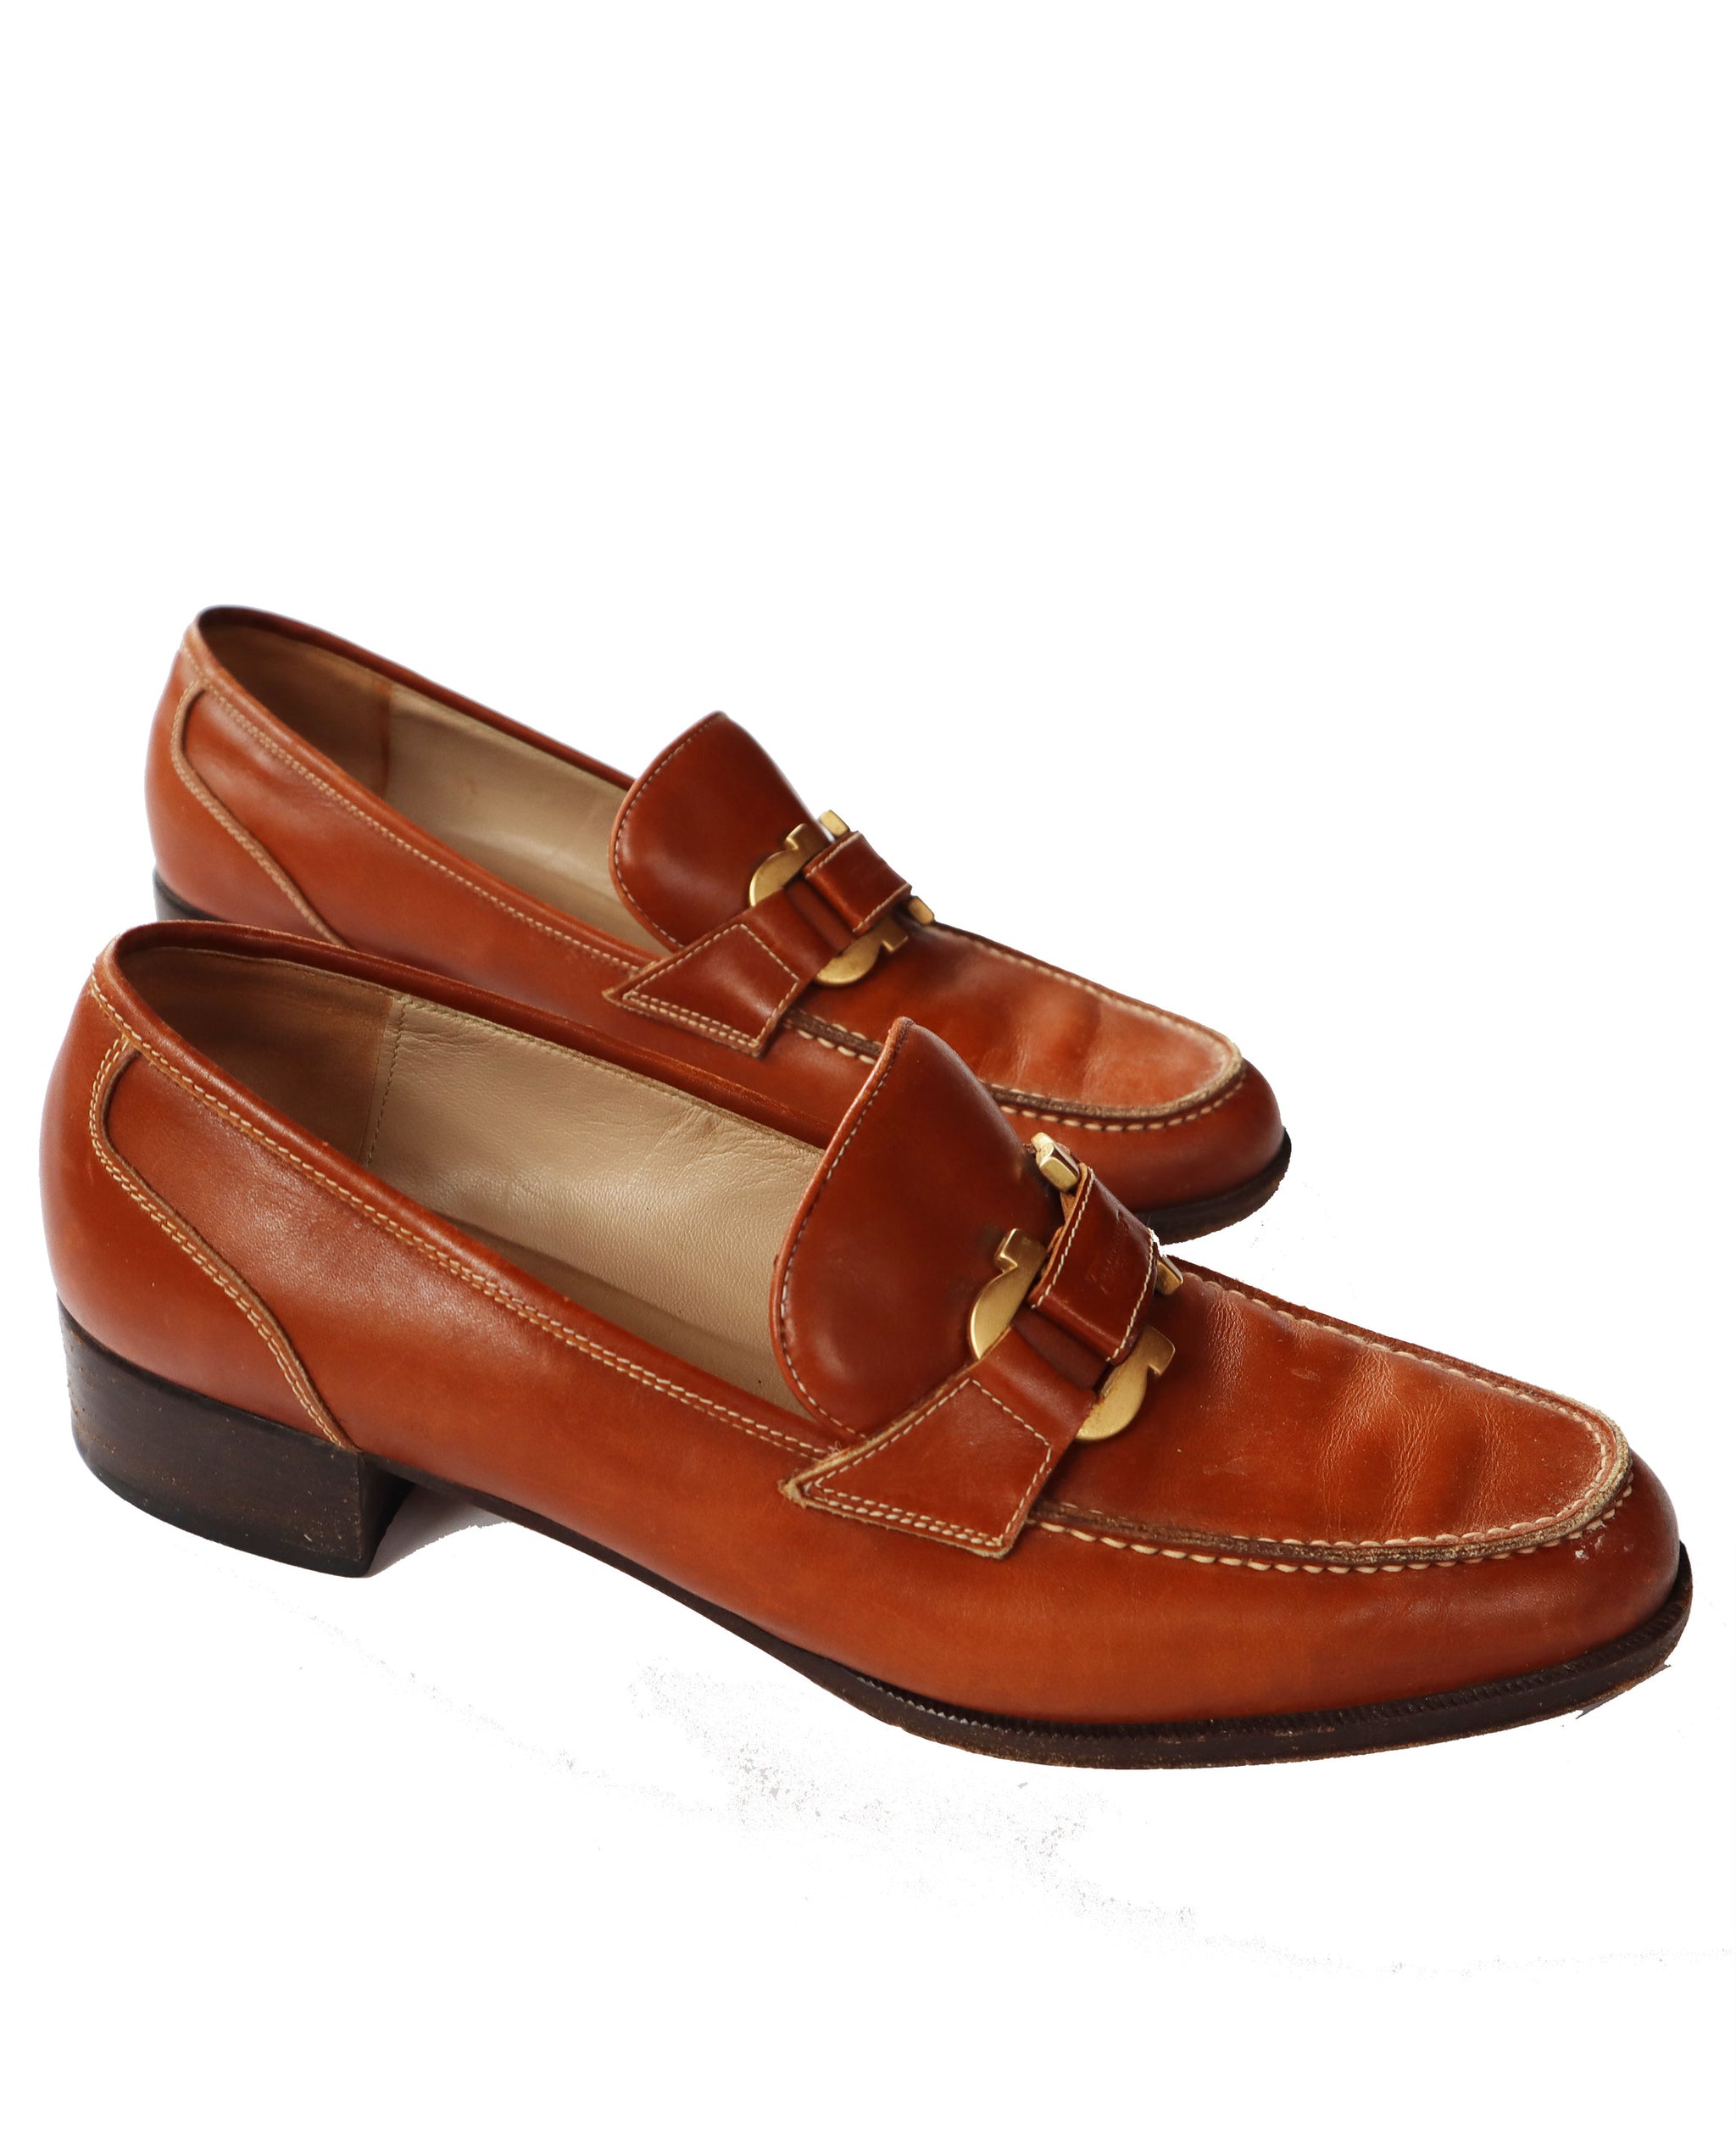 Rare Salvatore Ferragamo Gold Horseshoe Tan Leather Loafers (Size 7.5)